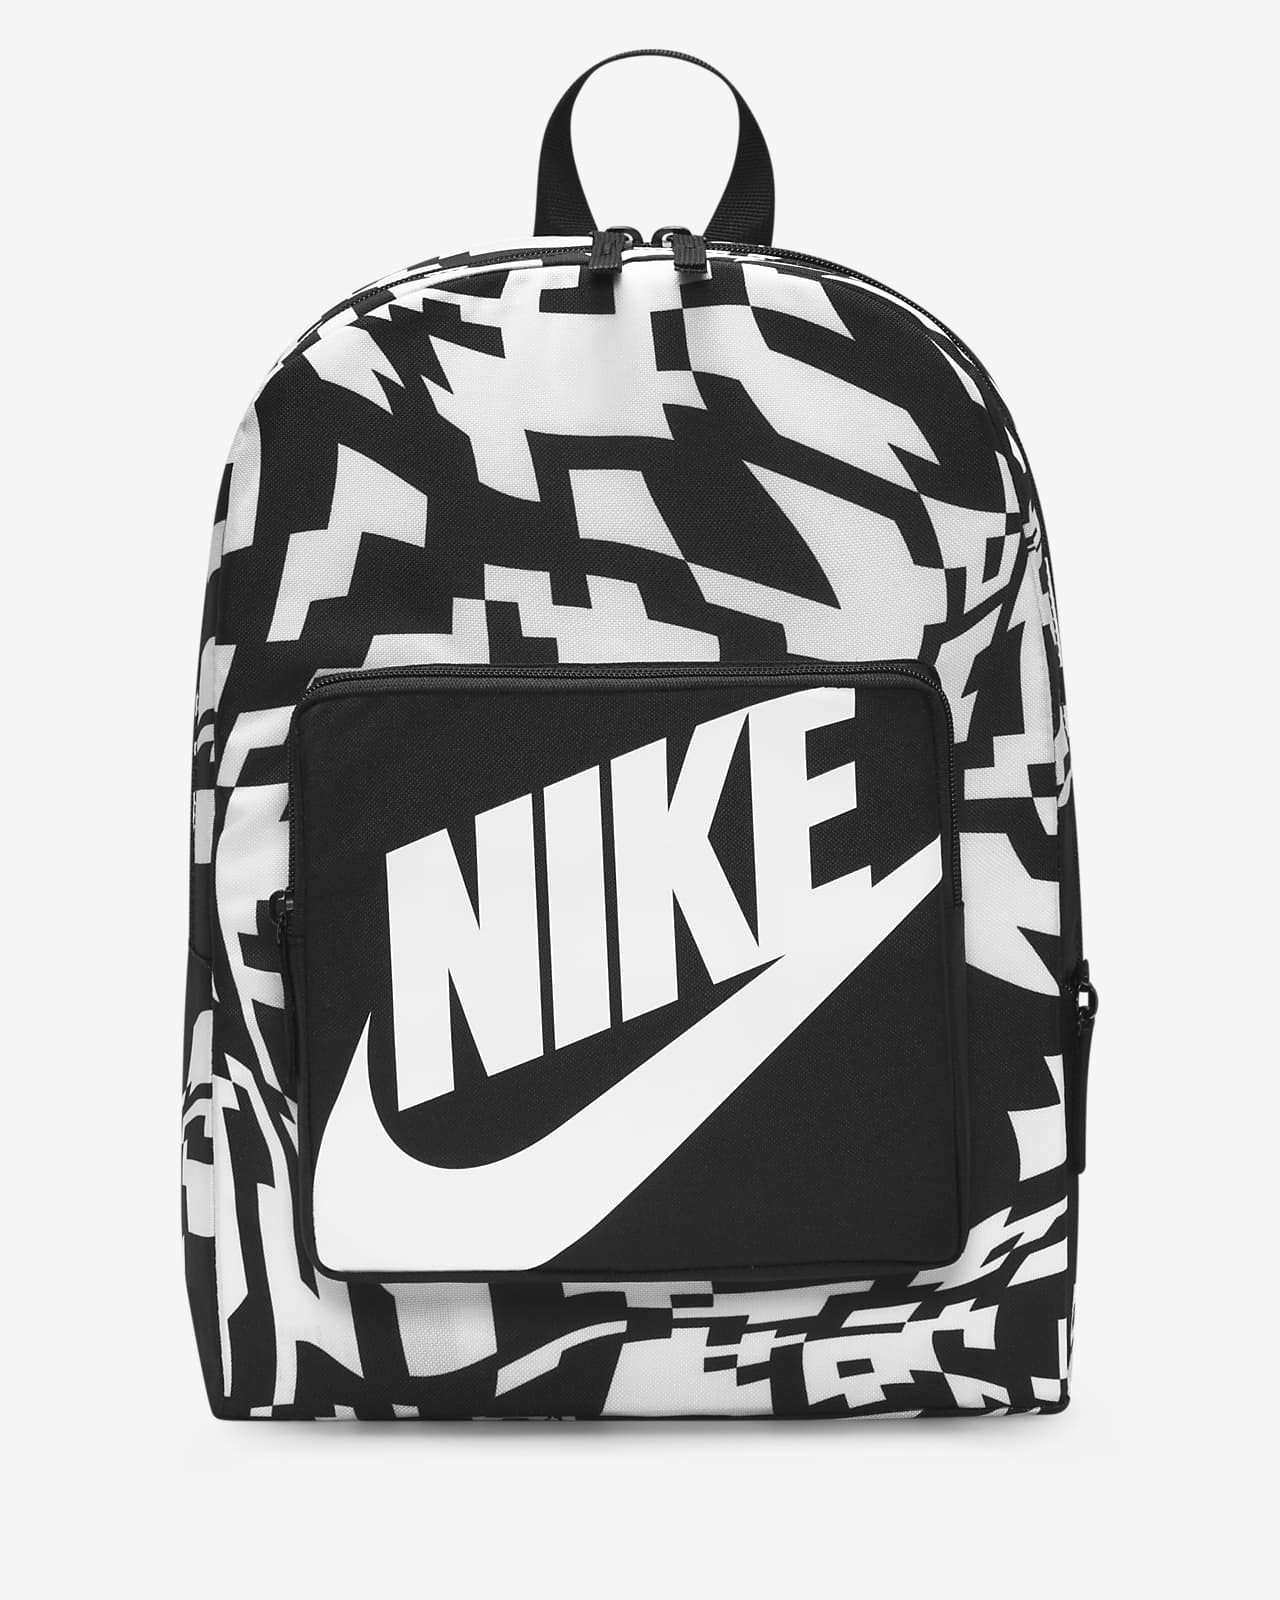 Nike Classic Kids' Printed Backpack (16L)